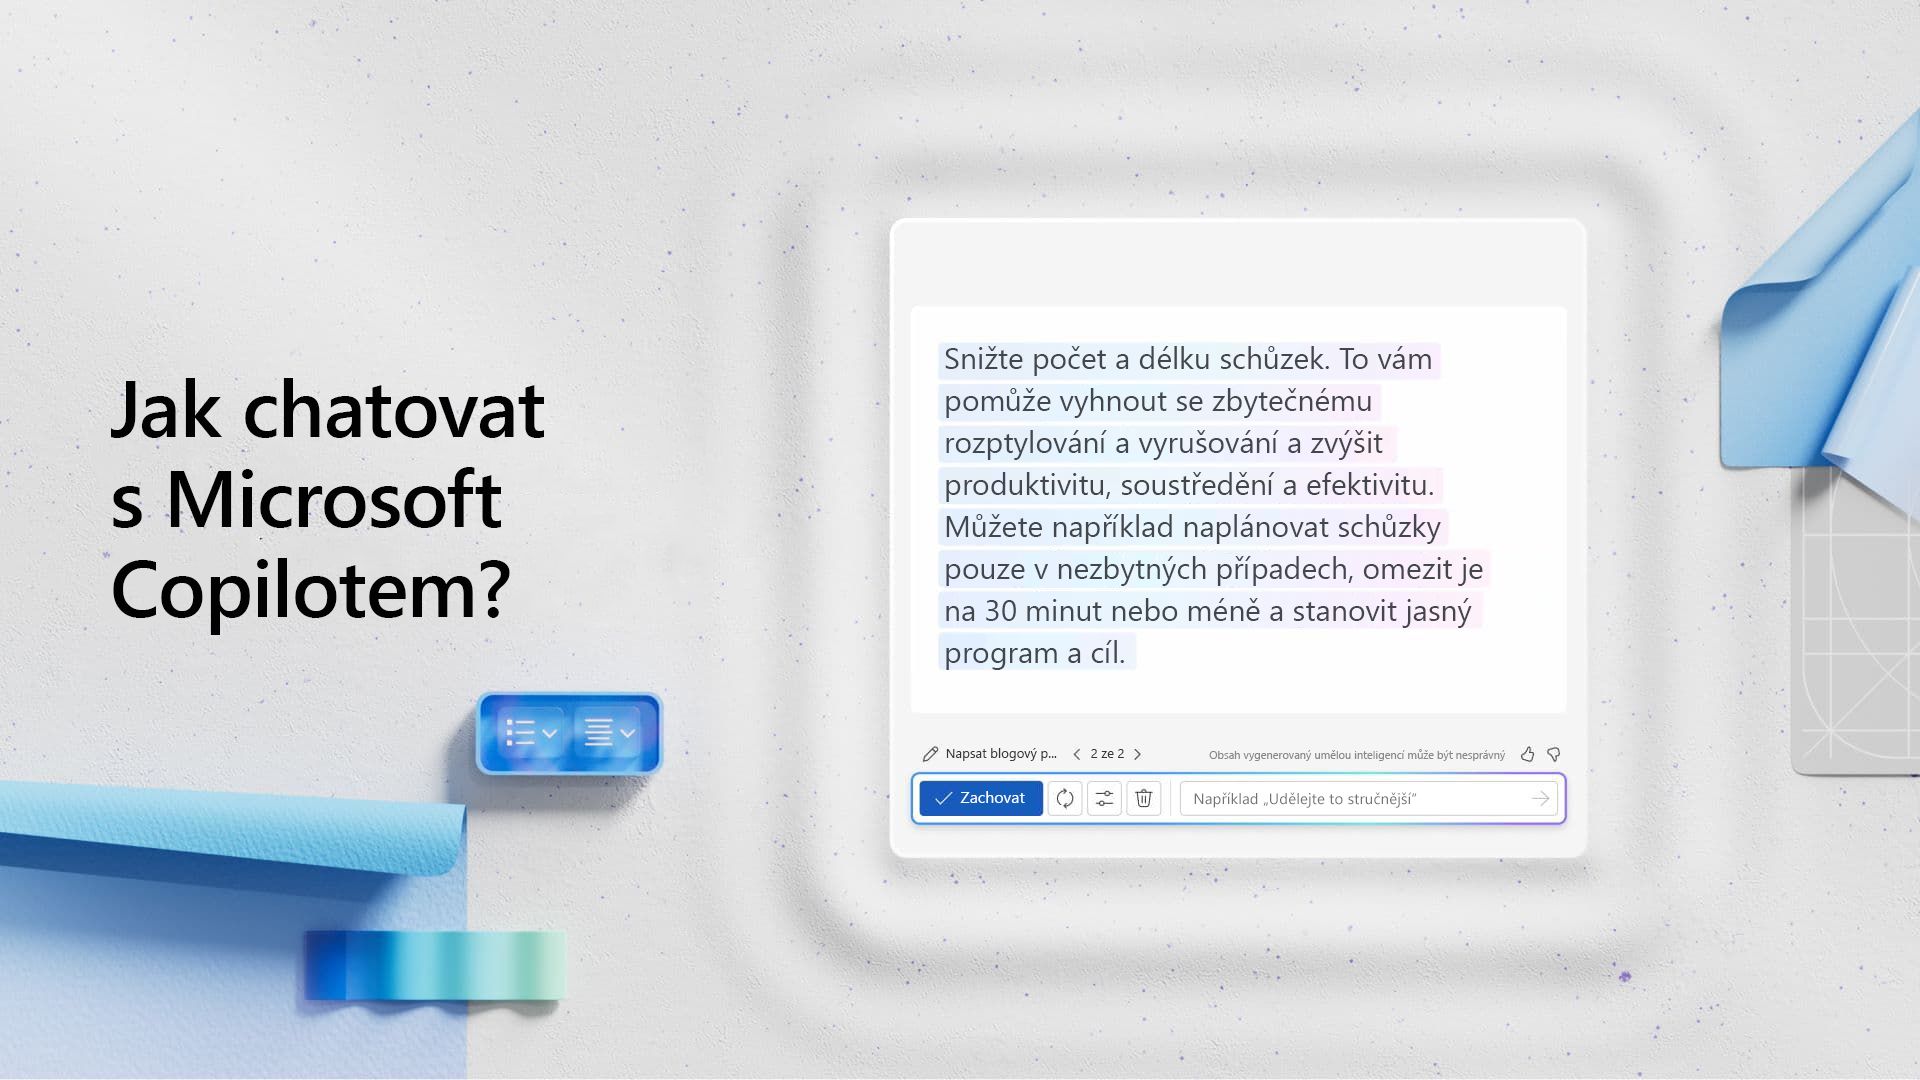 Video: Jak chatovat s Microsoft Copilotem